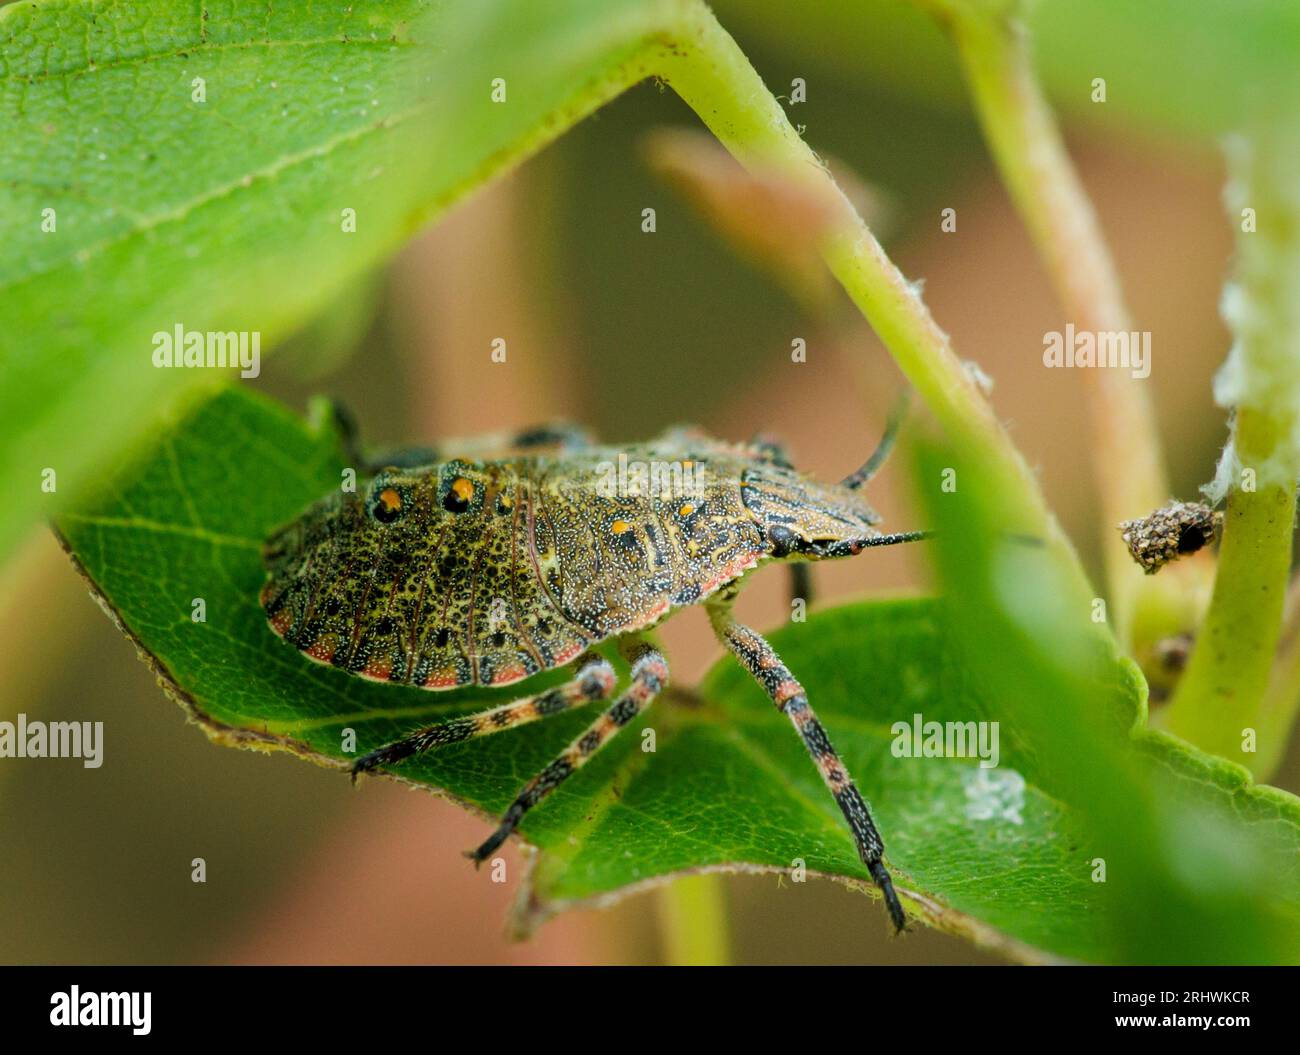 Un insecte puant se trouve à l'ombre créée par les feuilles d'un érable. Banque D'Images